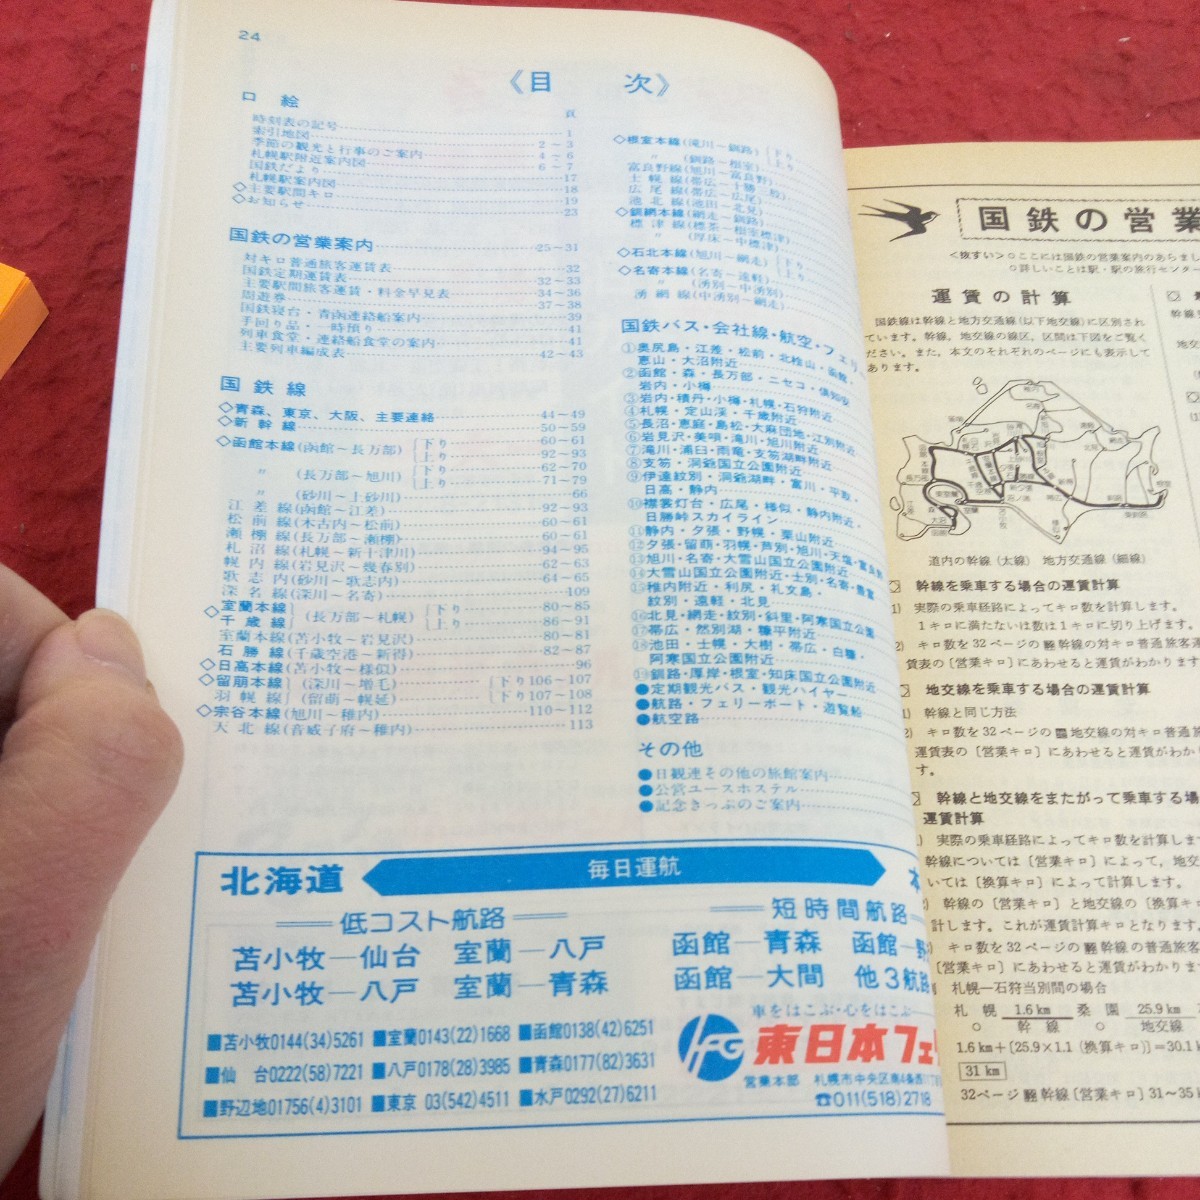 e-538 в пределах Хоккайдо расписание Showa 61 год выпуск большой снежные горы asahi пик трос way park отель 61-11 National Railways diamond модифицировано правильный номер . settled выпускать фирма *1